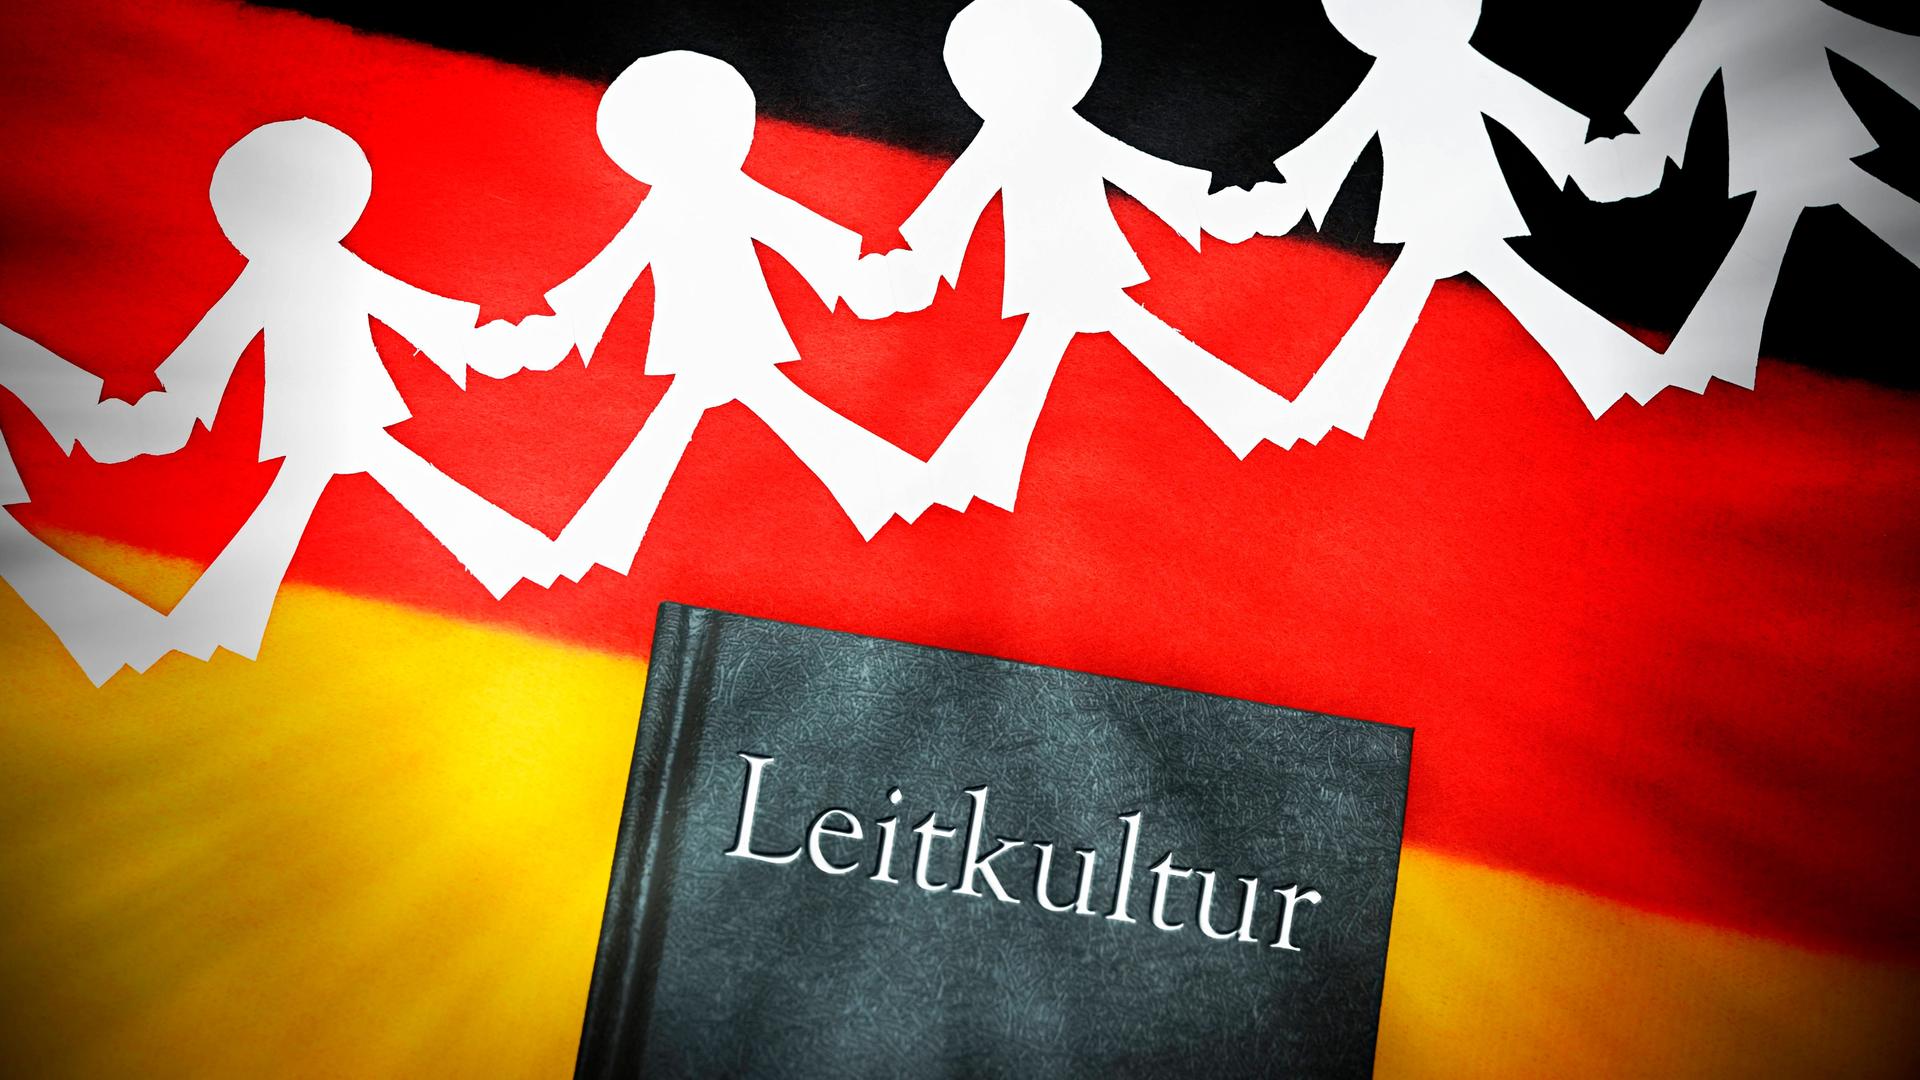 Ein schwarzes Buch mit dem silber gedruckten Wort "Leitkultur" auf einer deutschen Flagge. Über dem Buch liegt ein weißer Scherenschnitt, der Menschen darstellt, die sich an den Händen halten. 